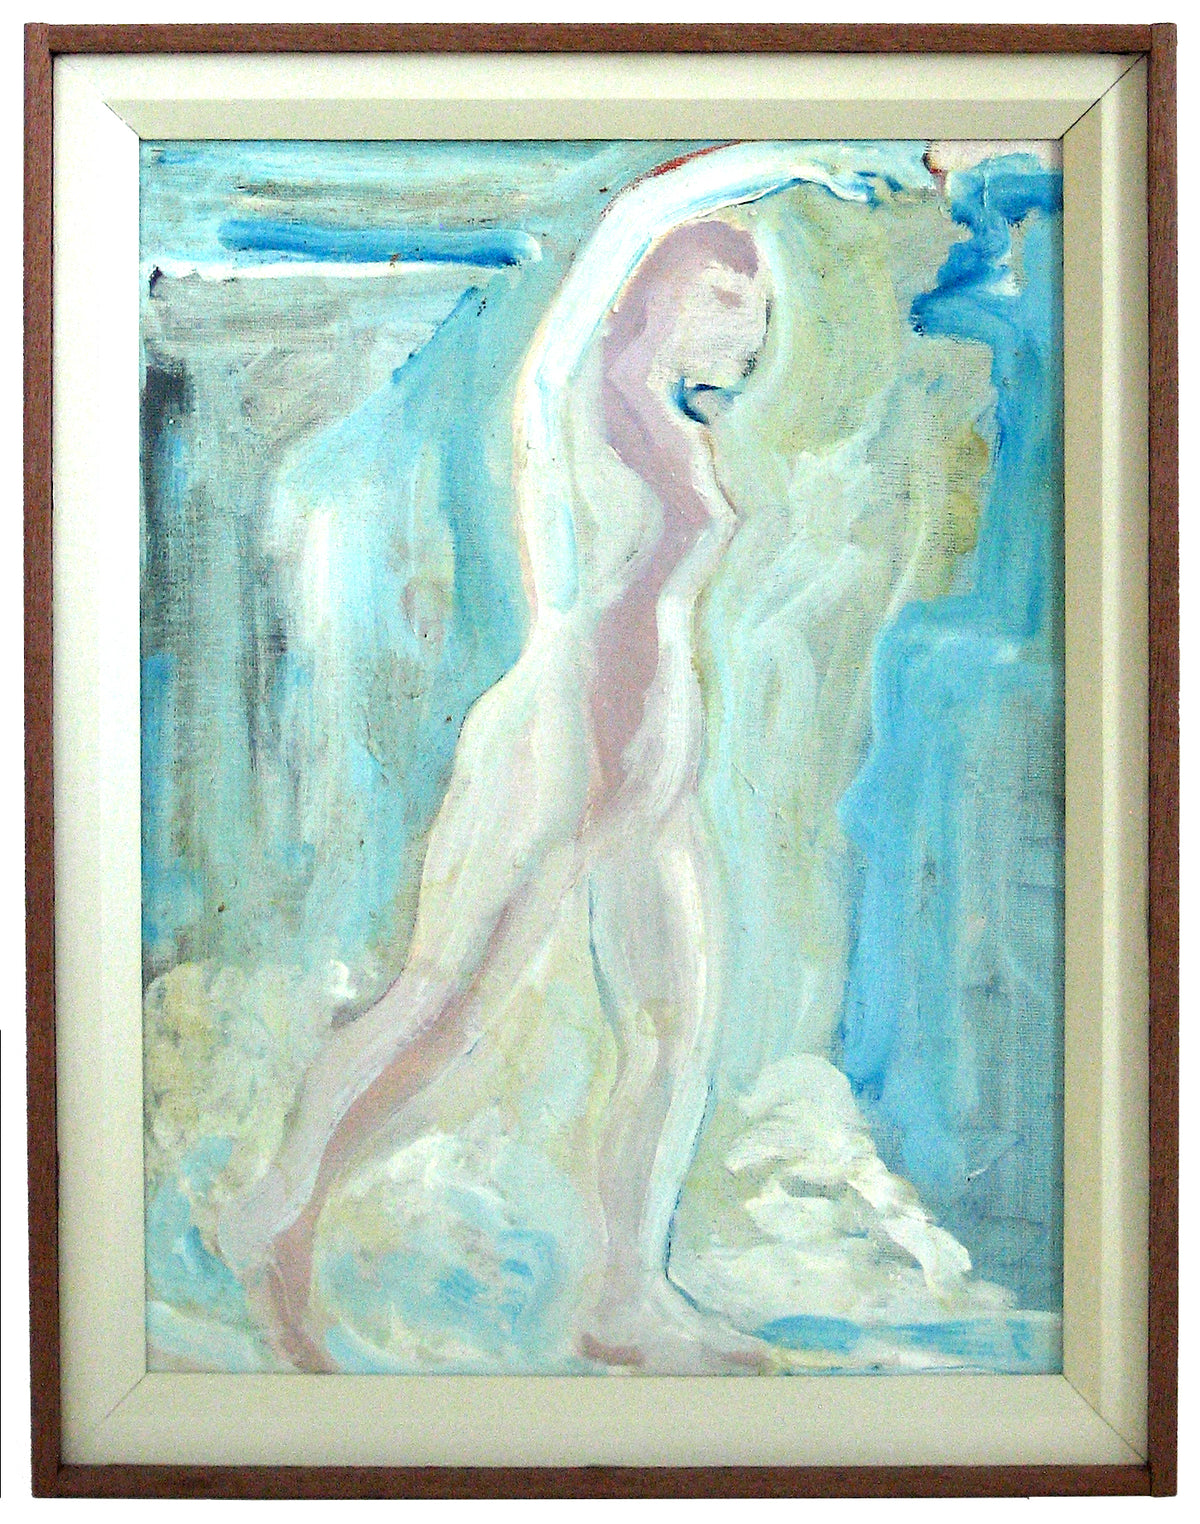 Bay Area Figurative Standiong Form&lt;br&gt;1978 Oil on Canvas&lt;br&gt;&lt;br&gt;#12722